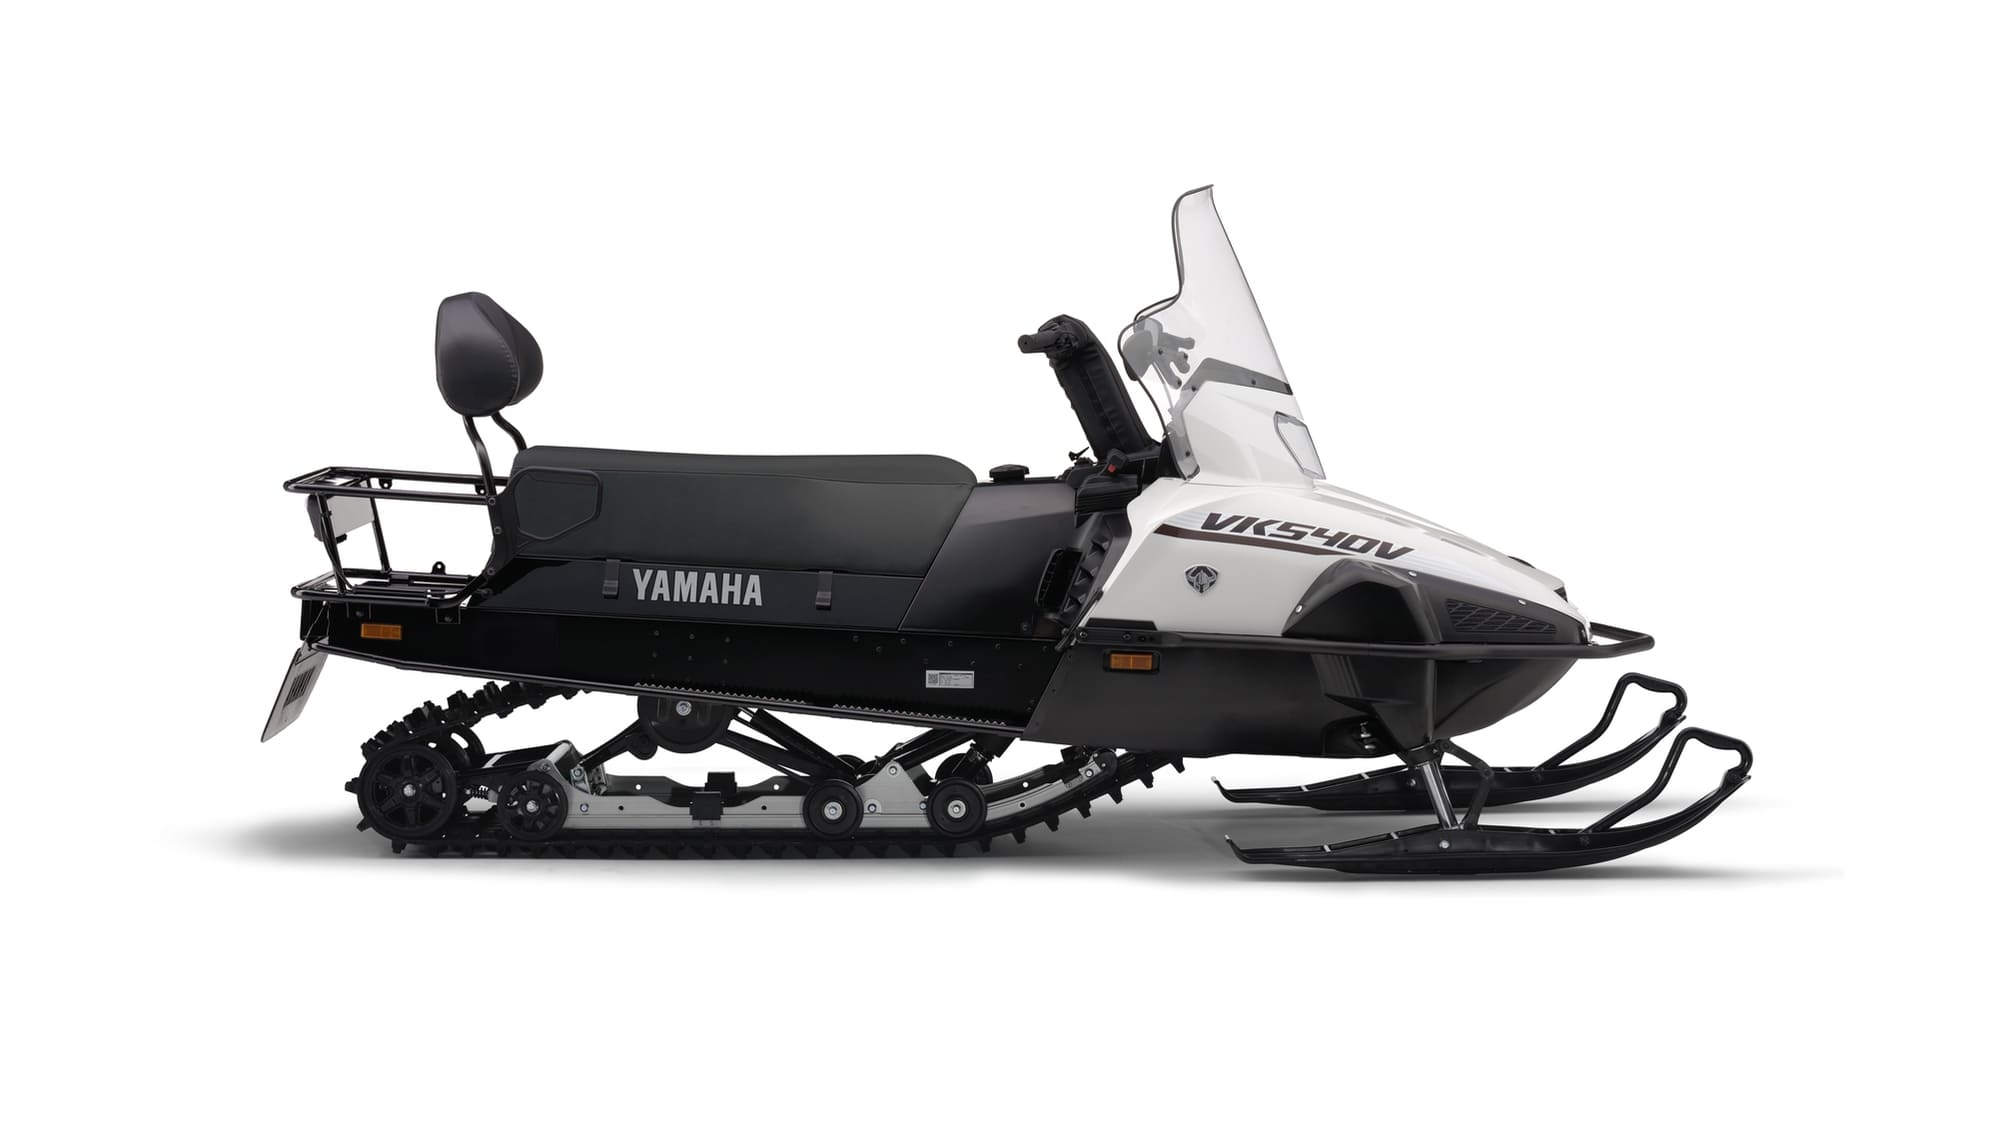 2018-Yamaha-VK540-V-EU-Powder-White-Studio-002.jpg